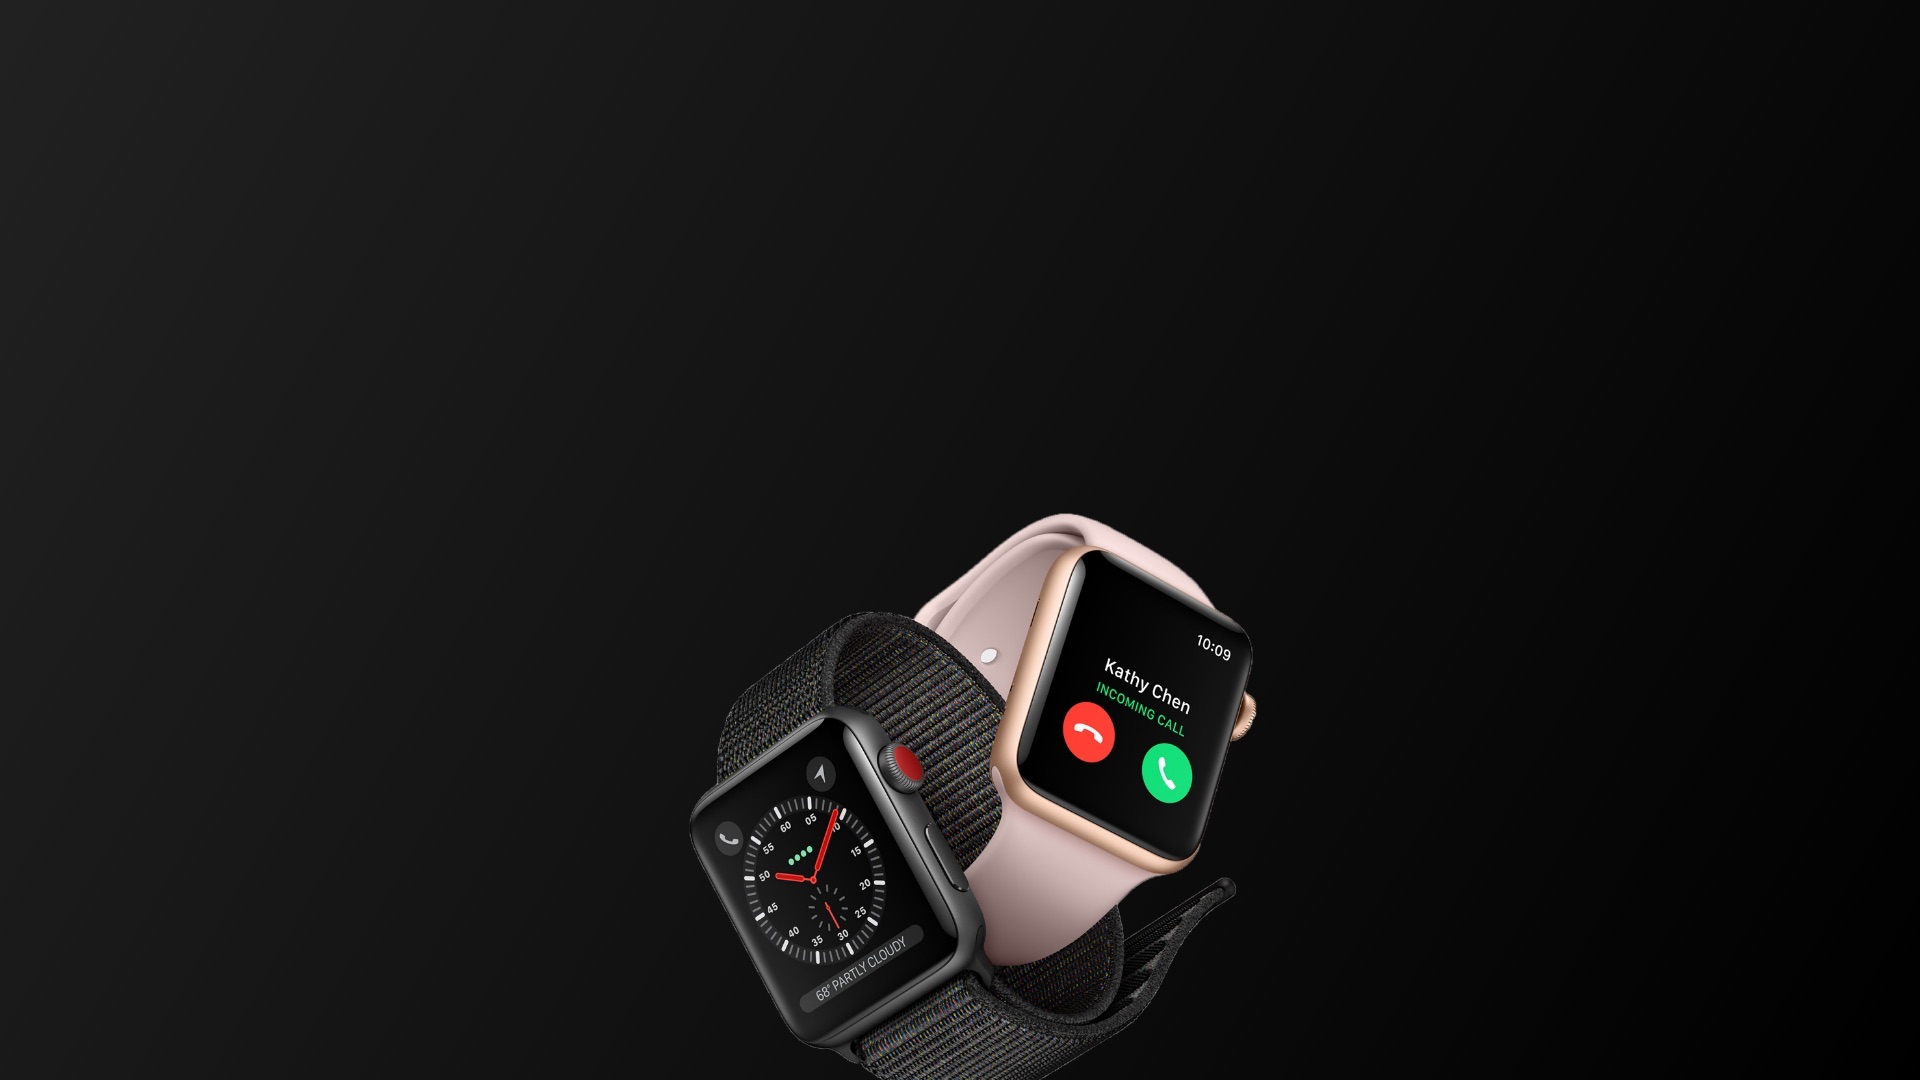 Обои для часов apple iwatch